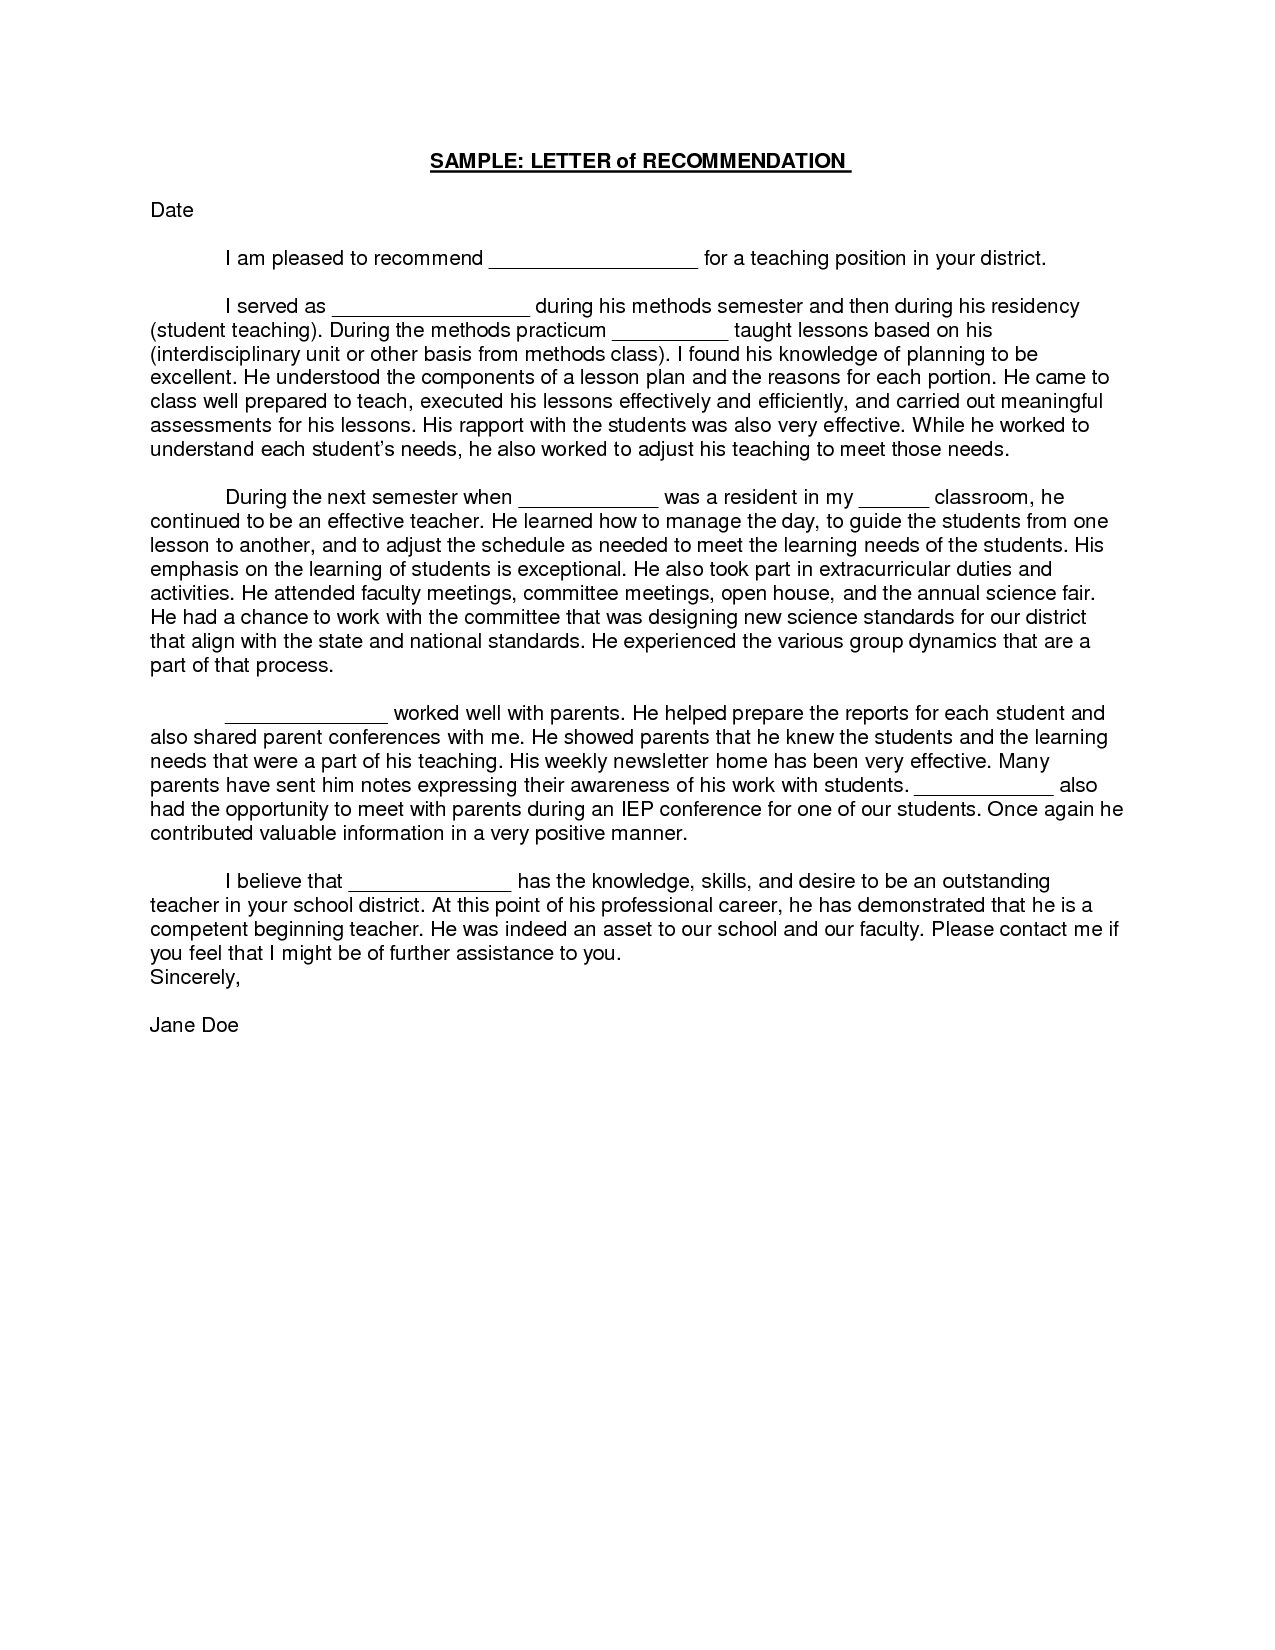 Reference Letter Template - Sample Student Teacher Re Mendation Letters V9nqmvof